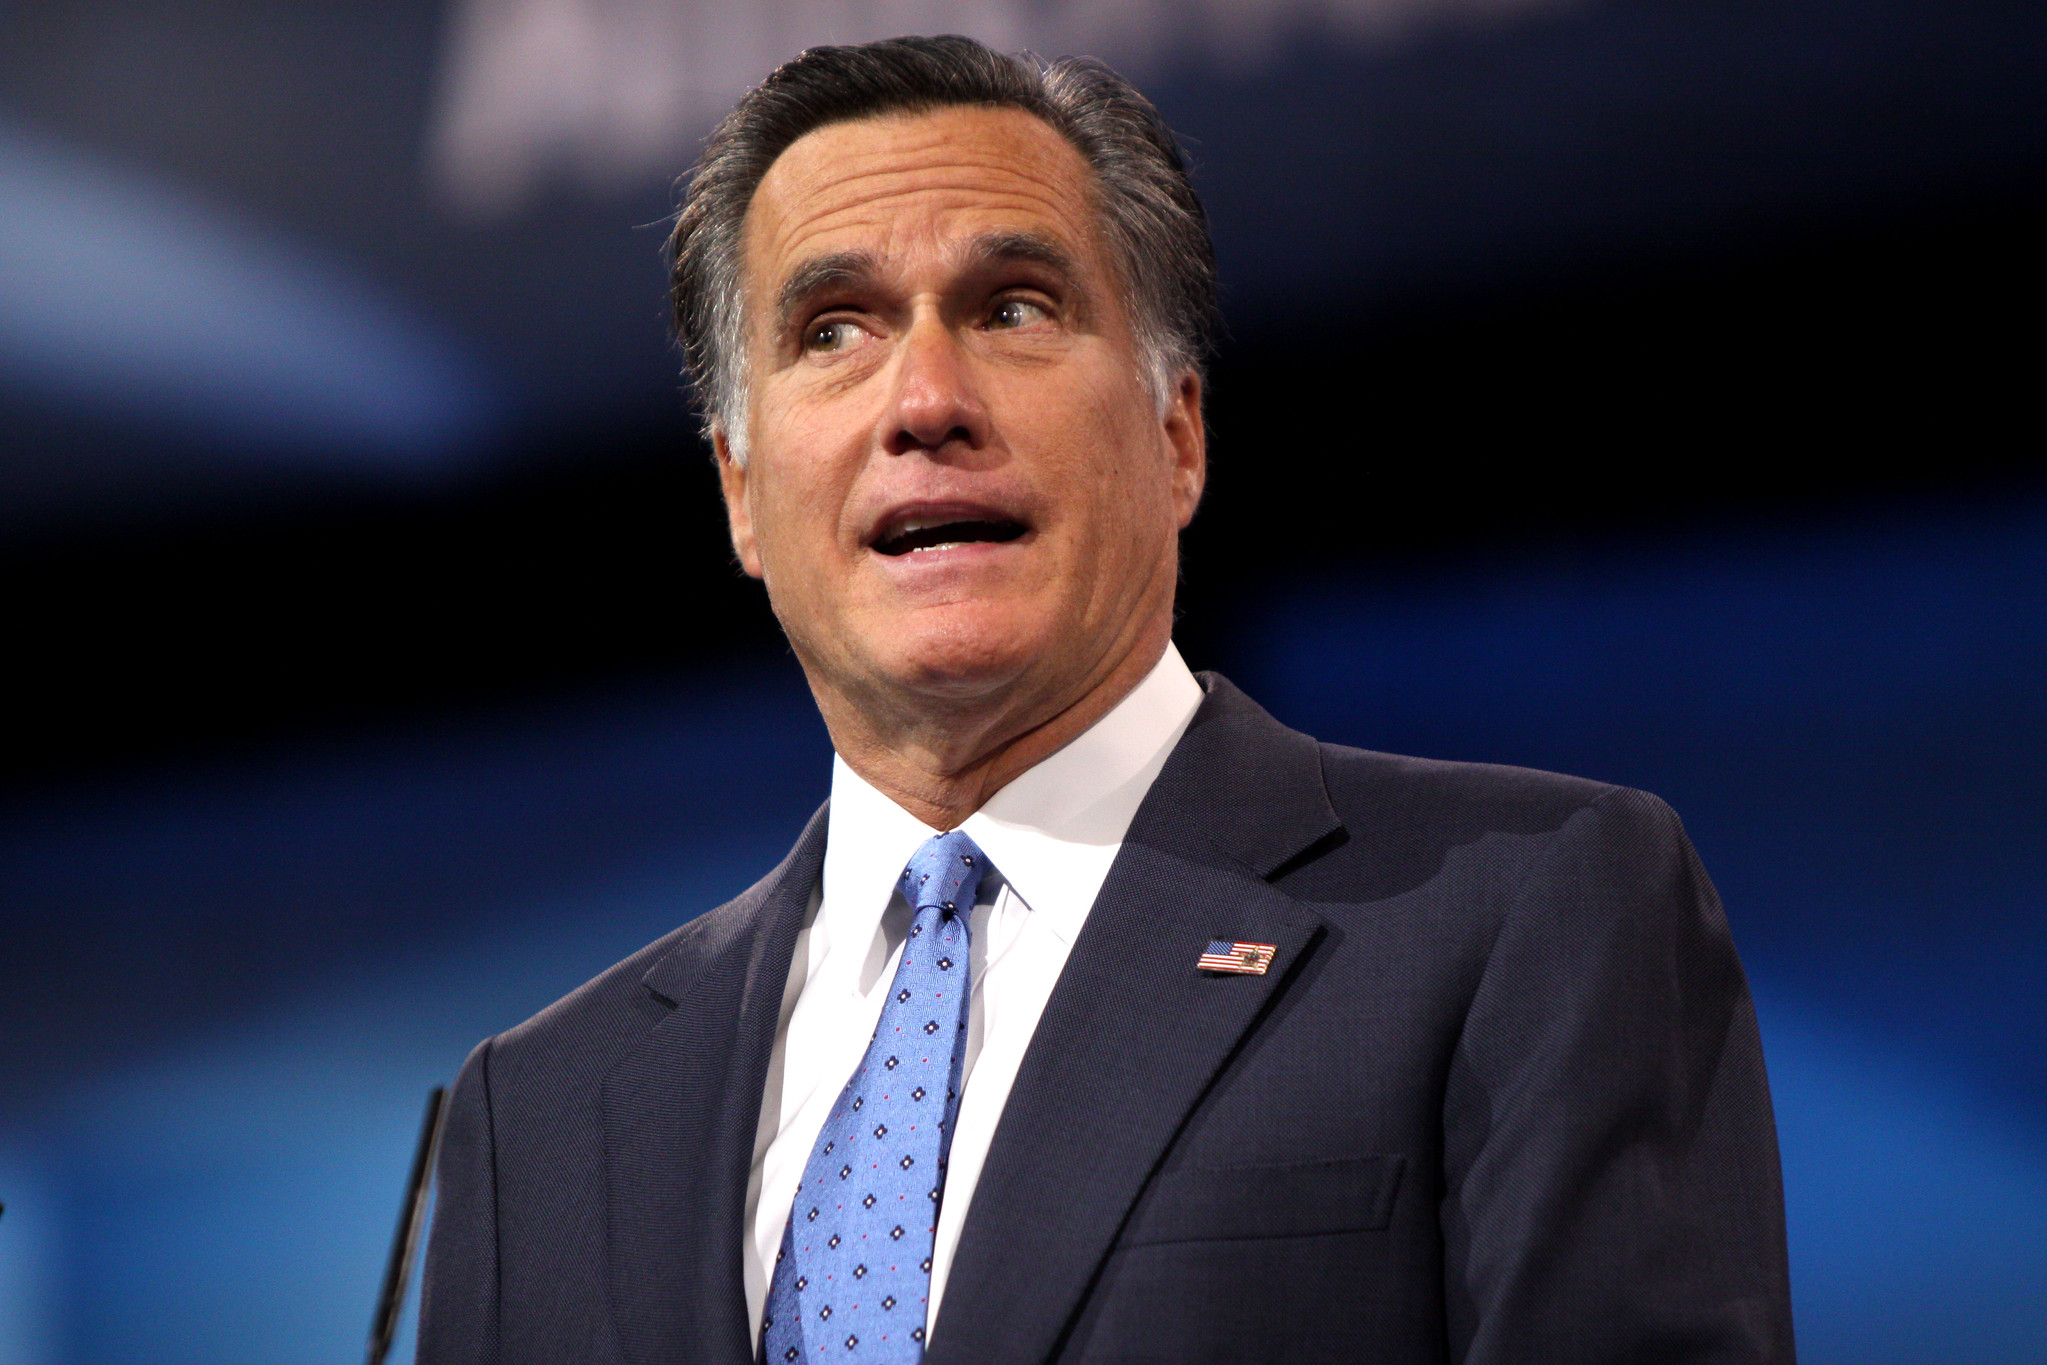 Romney confesses ignorance on Burisma during Trump’s Ukraine impeachment.